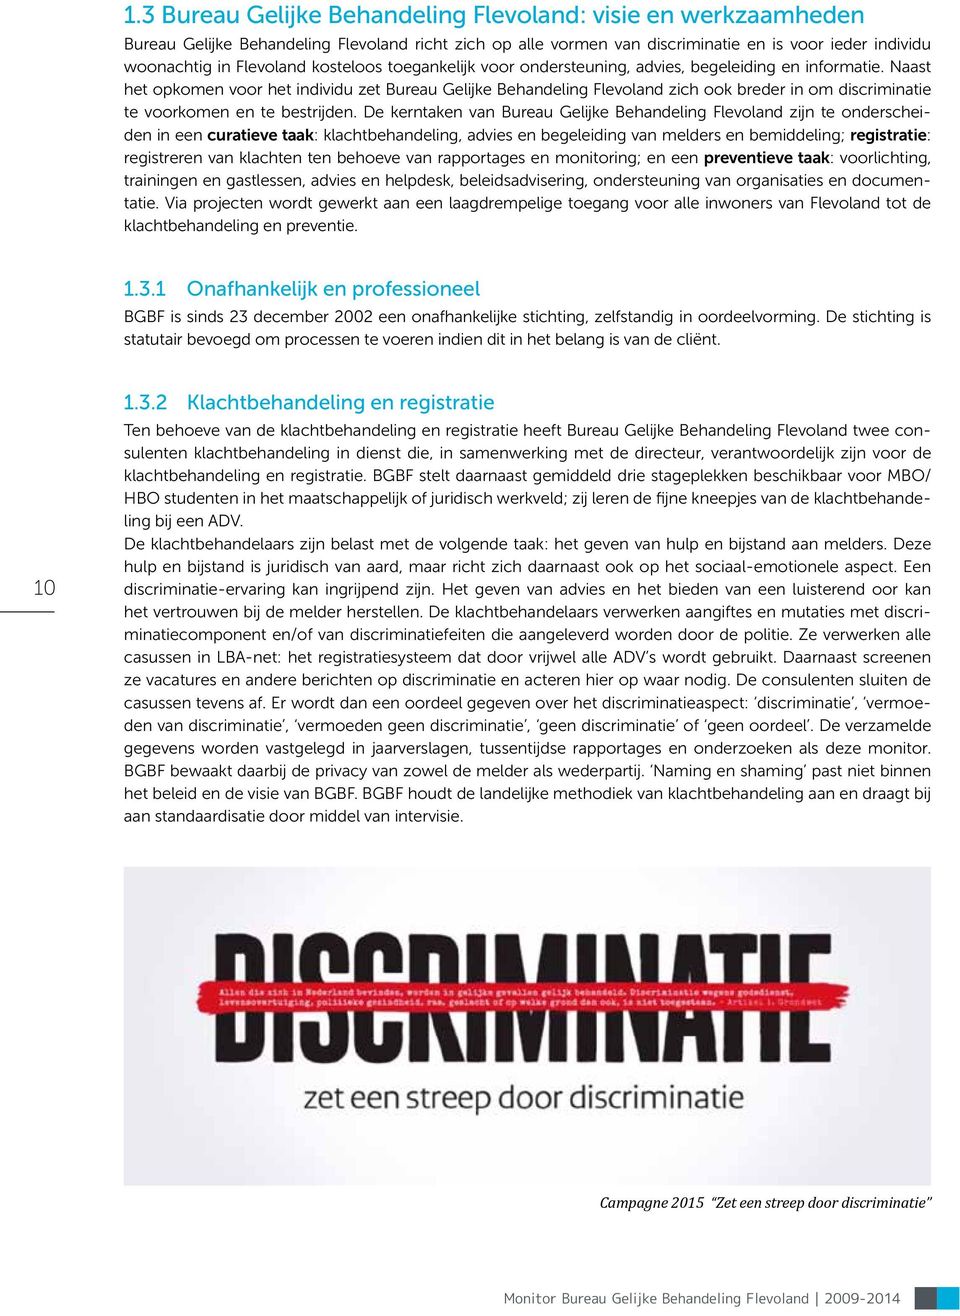 Naast het opkomen voor het individu zet Bureau Gelijke Behandeling Flevoland zich ook breder in om discriminatie te voorkomen en te bestrijden.